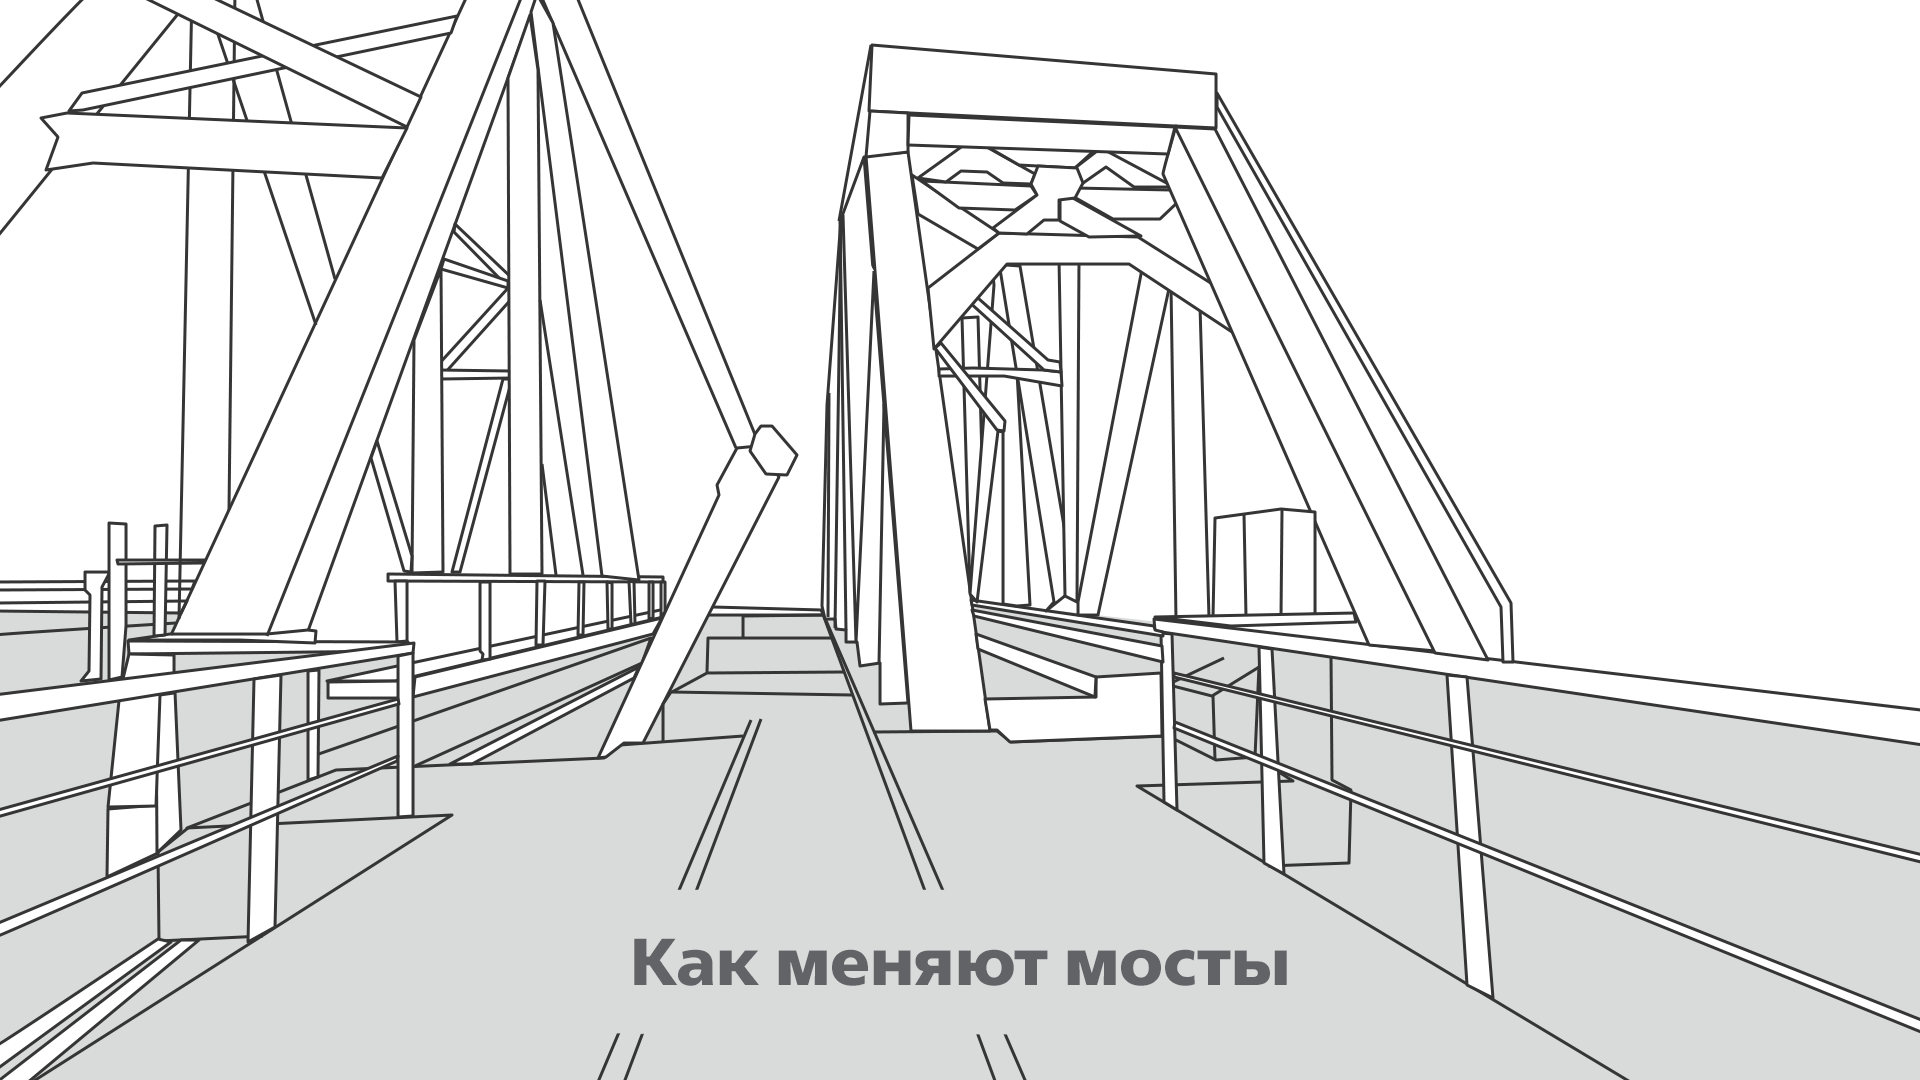 Шагающий мост. Хабаровское Мостостроительное общество. Группа компаний мост. Графика мосты и магистрали. Мост Эльдиган Тудур.